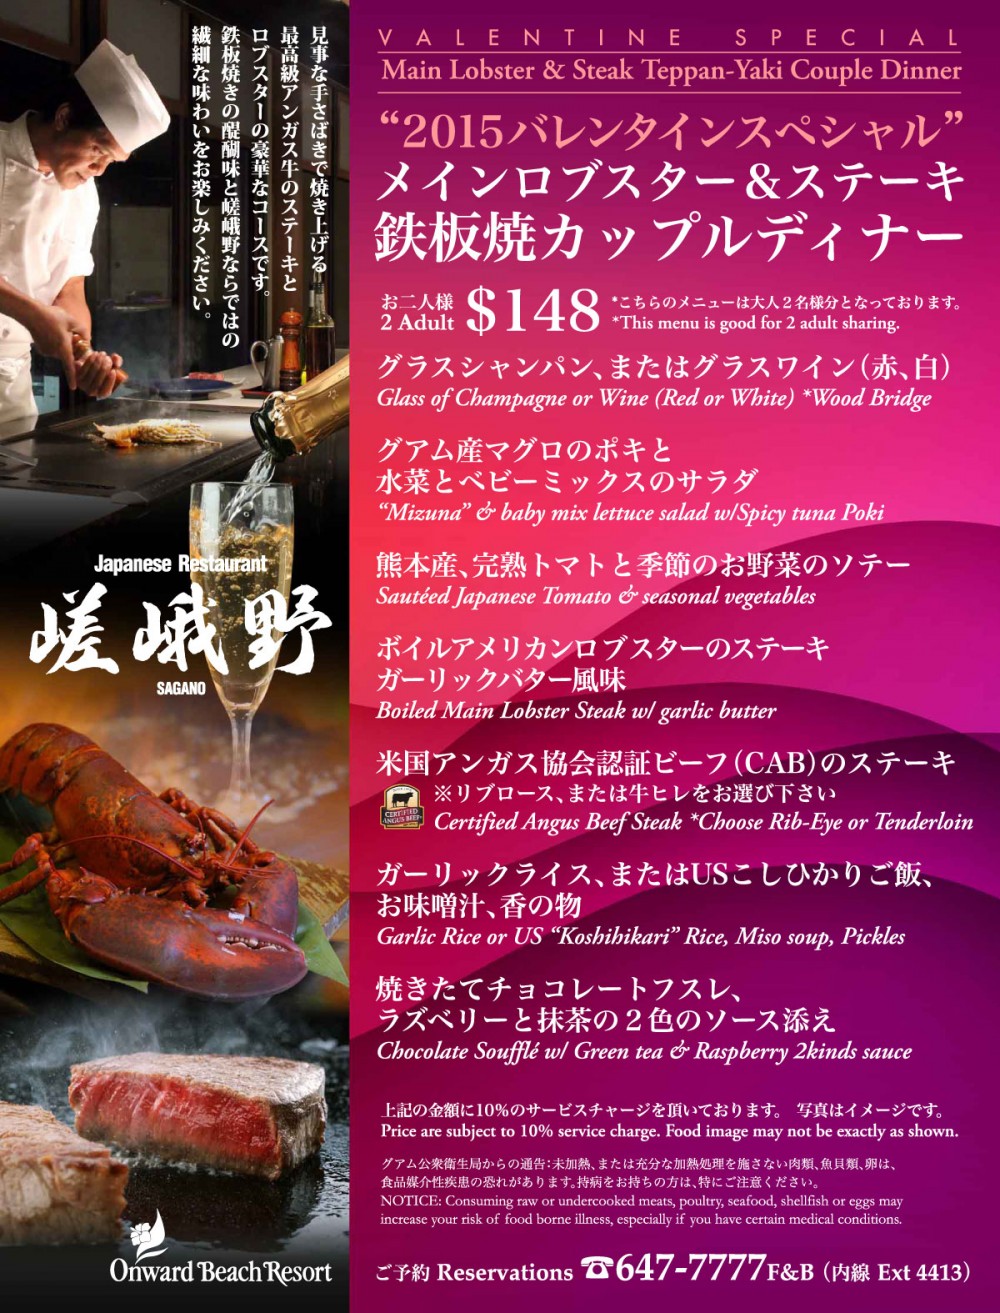 嵯峨野のバレンタインスペシャル メインロブスター&ステーキ 鉄板焼カップルディナー